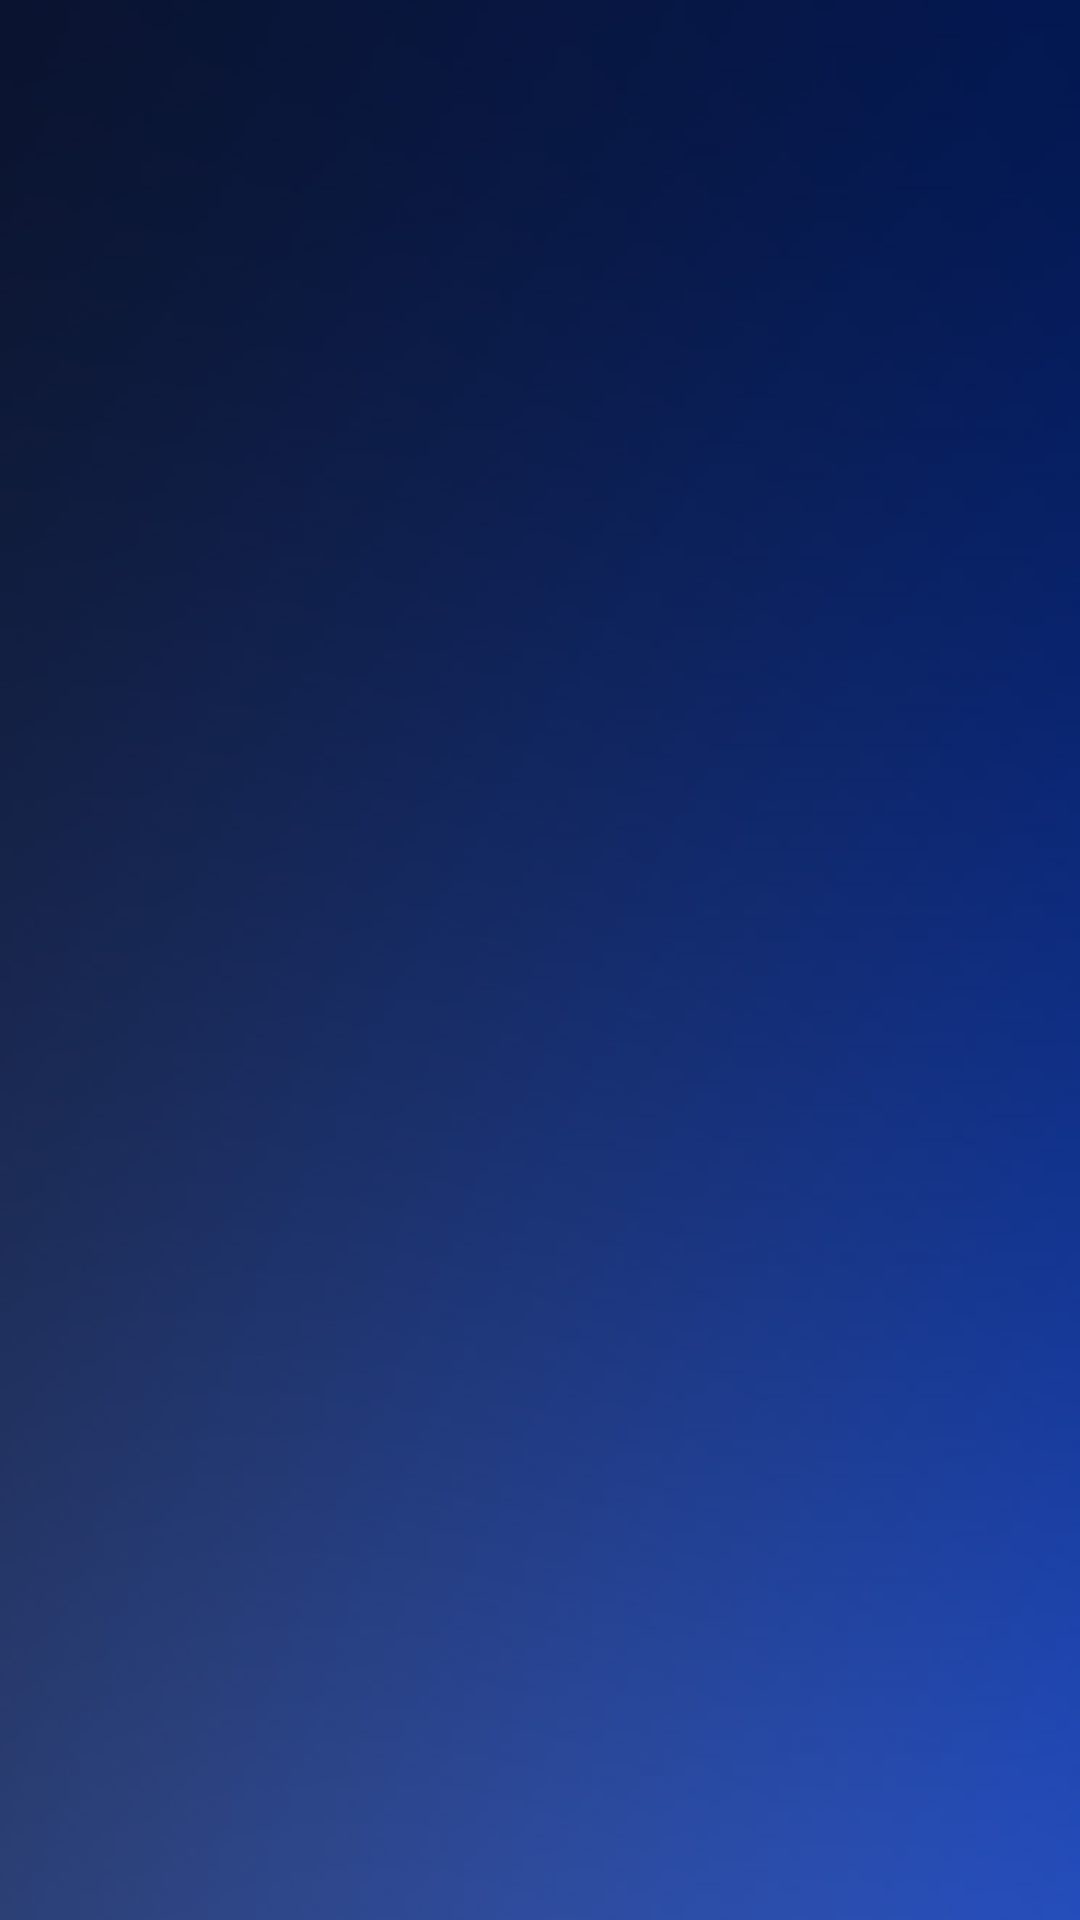 1080x1920 Pure Dark Blue Ocean Gradation Blur Background iPhone 6 wallpaper